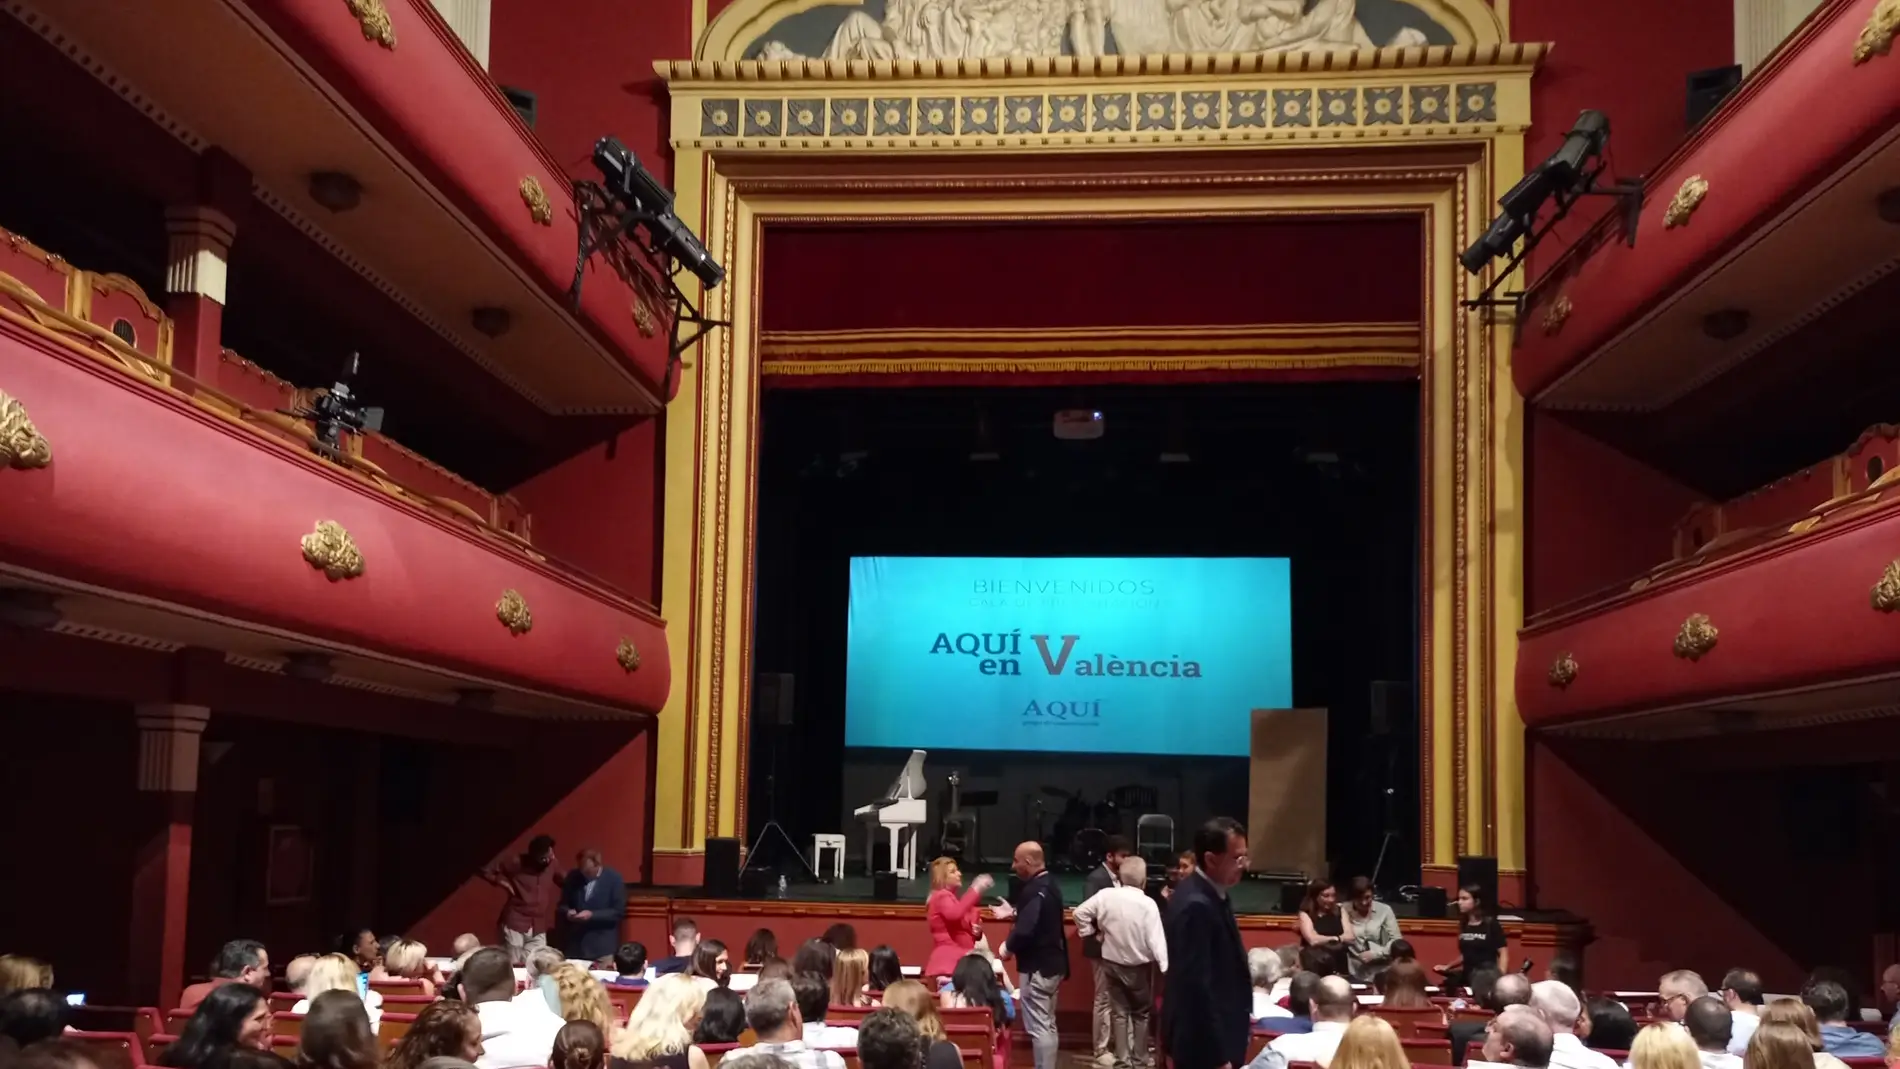 El Grupo de Comunicación "AQUÍ" ha presentado su proyecto en un acto en el Teatro Talía de València